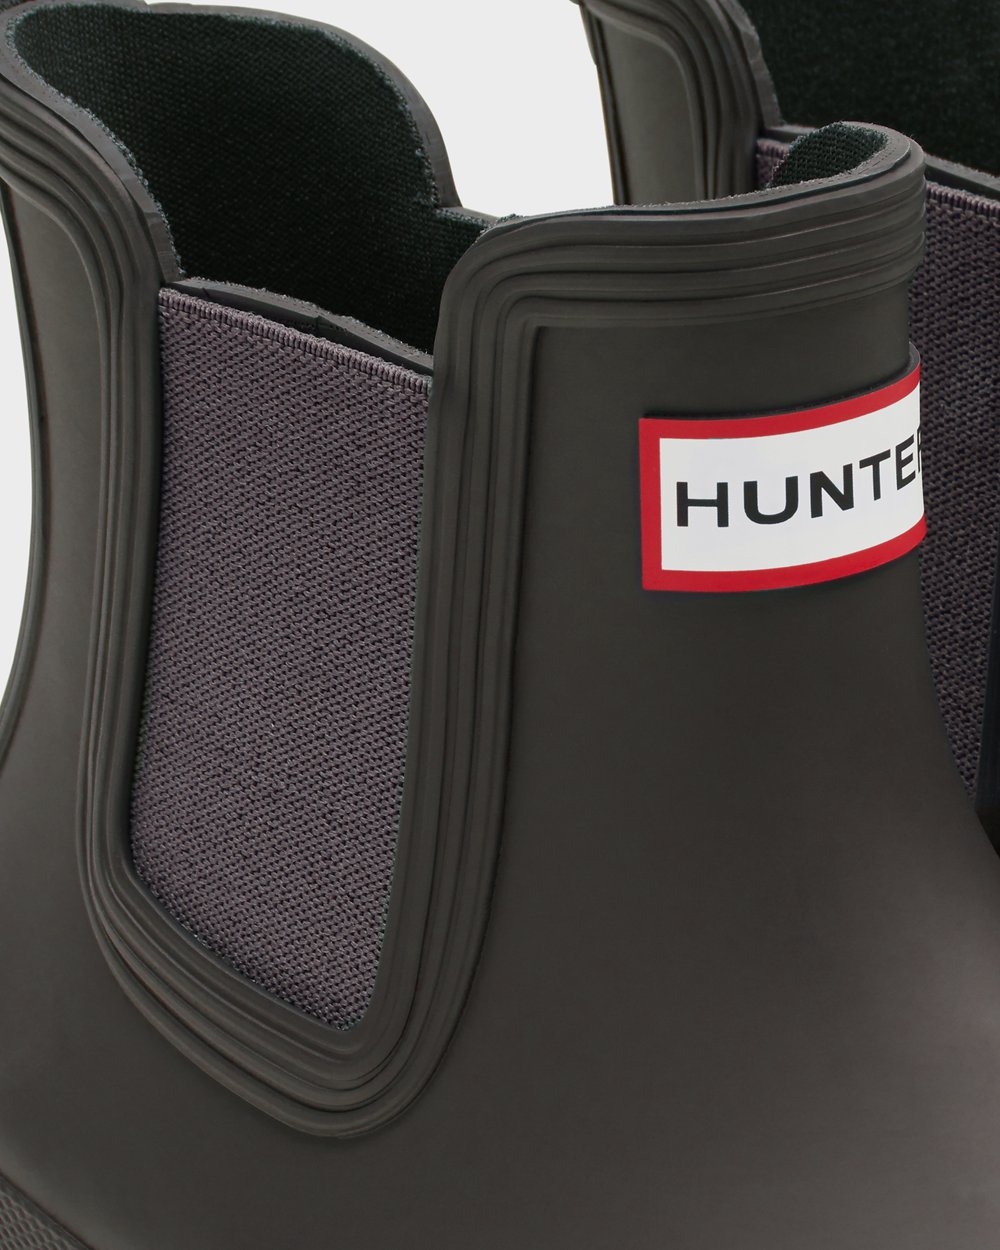 Womens Chelsea Boots - Hunter Original (62SHGQFRM) - Dark Grey